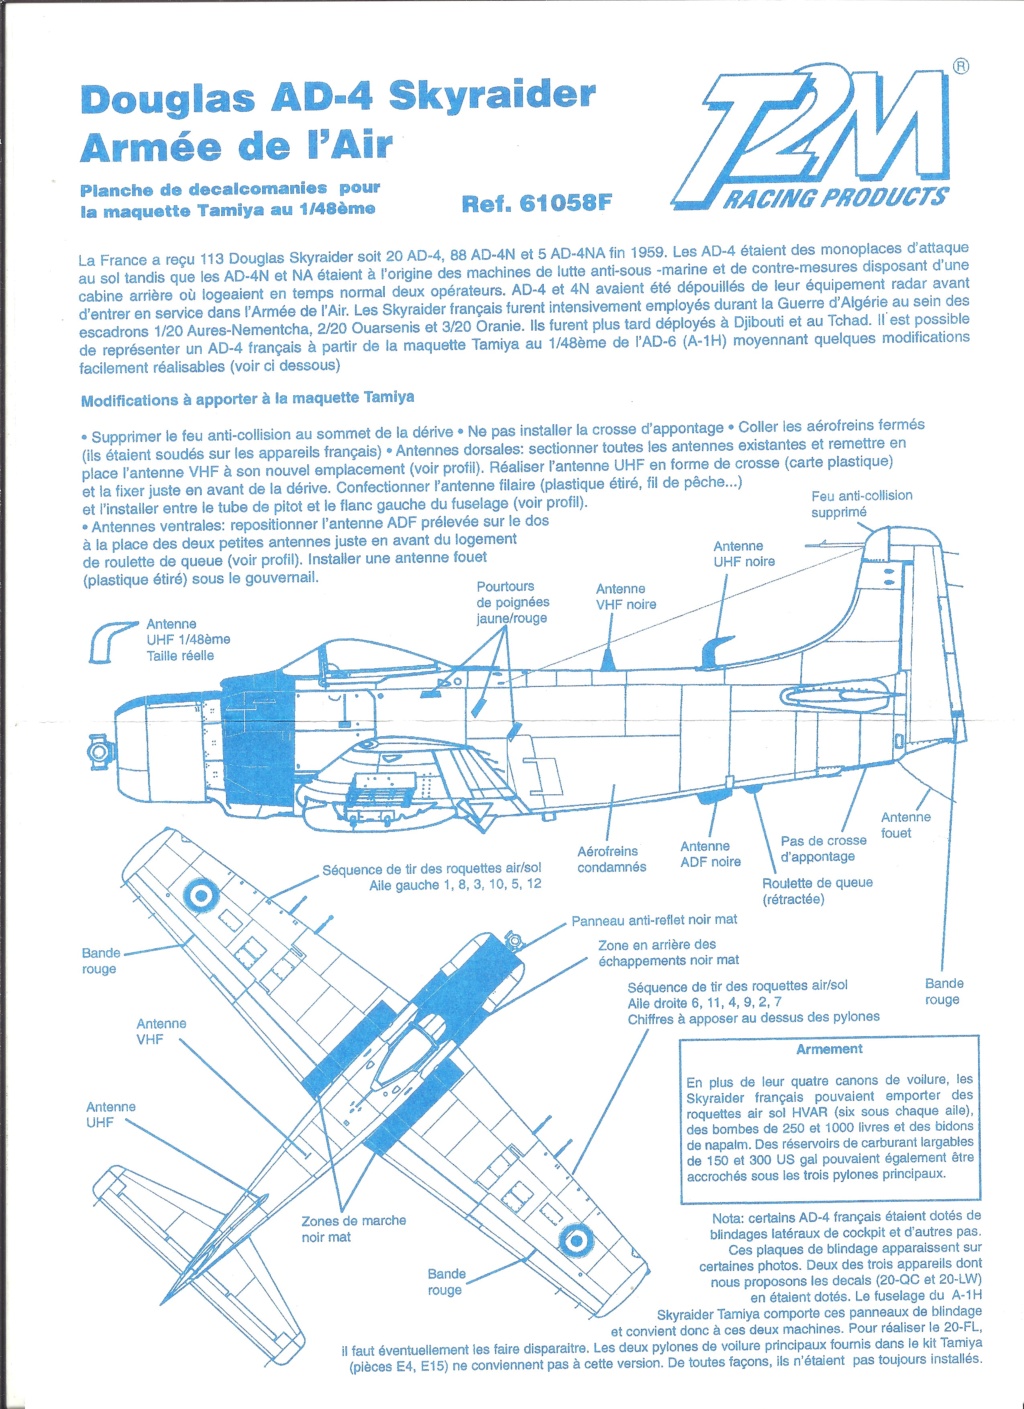 [TAMIYA] DOUGLAS A-1H & AD-4  SKYRAIDER 1/48ème Réf 61058F Série limitée Notice Tami1050